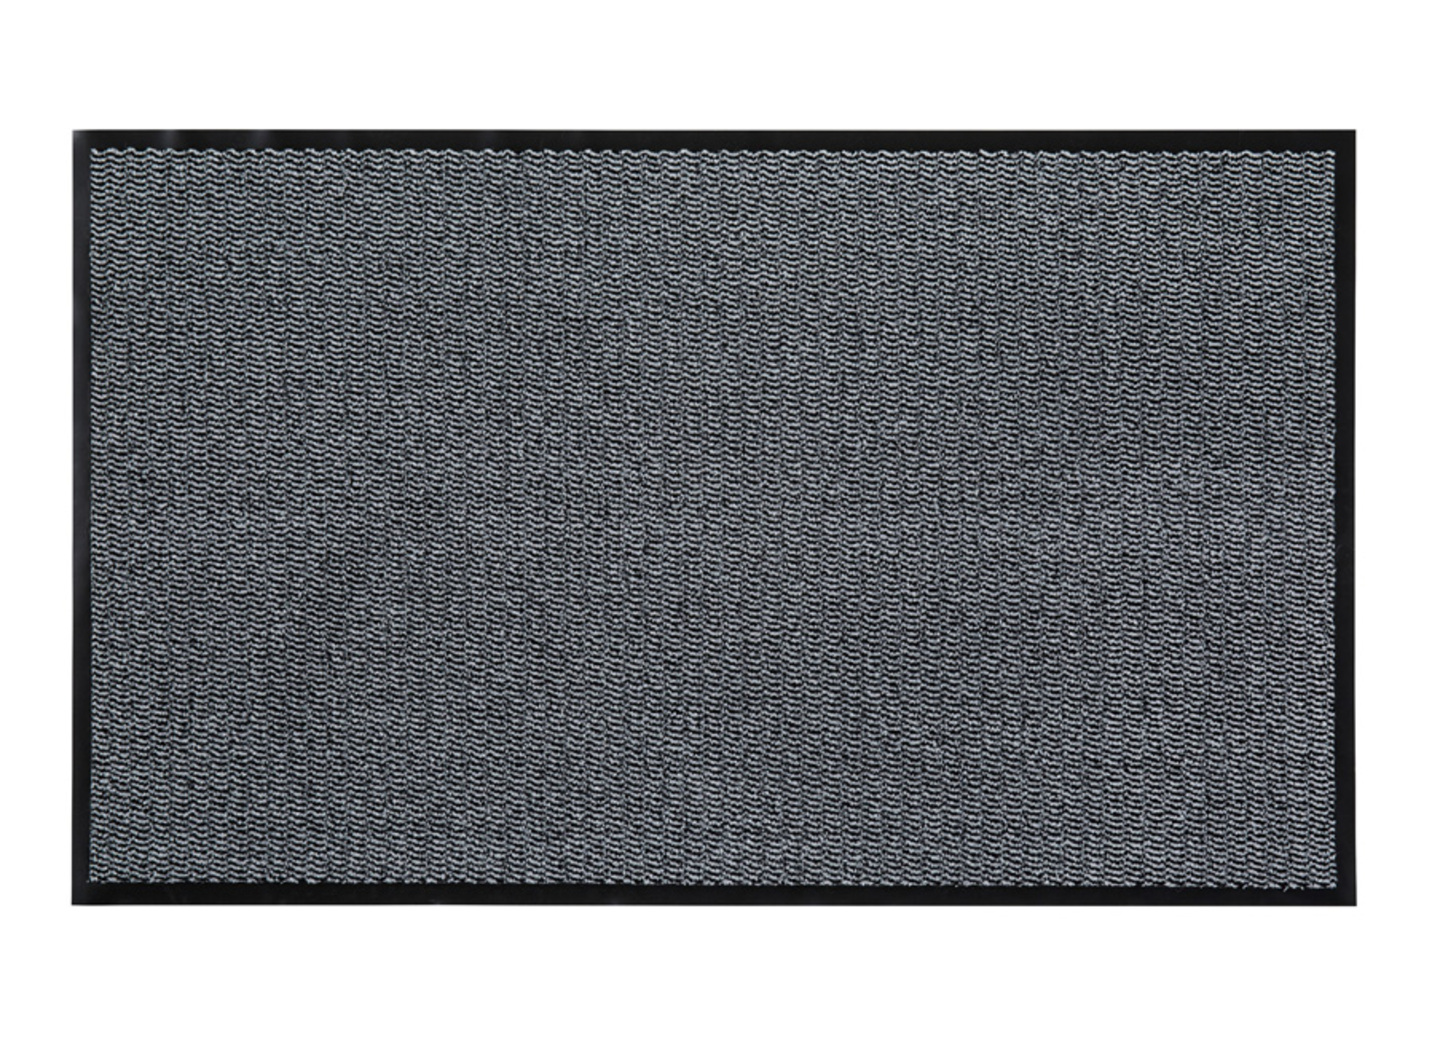 Andiamo Schmutzfangmatten für innen und außen, Größe 165 (120x180 cm), Hellgrau von BADER